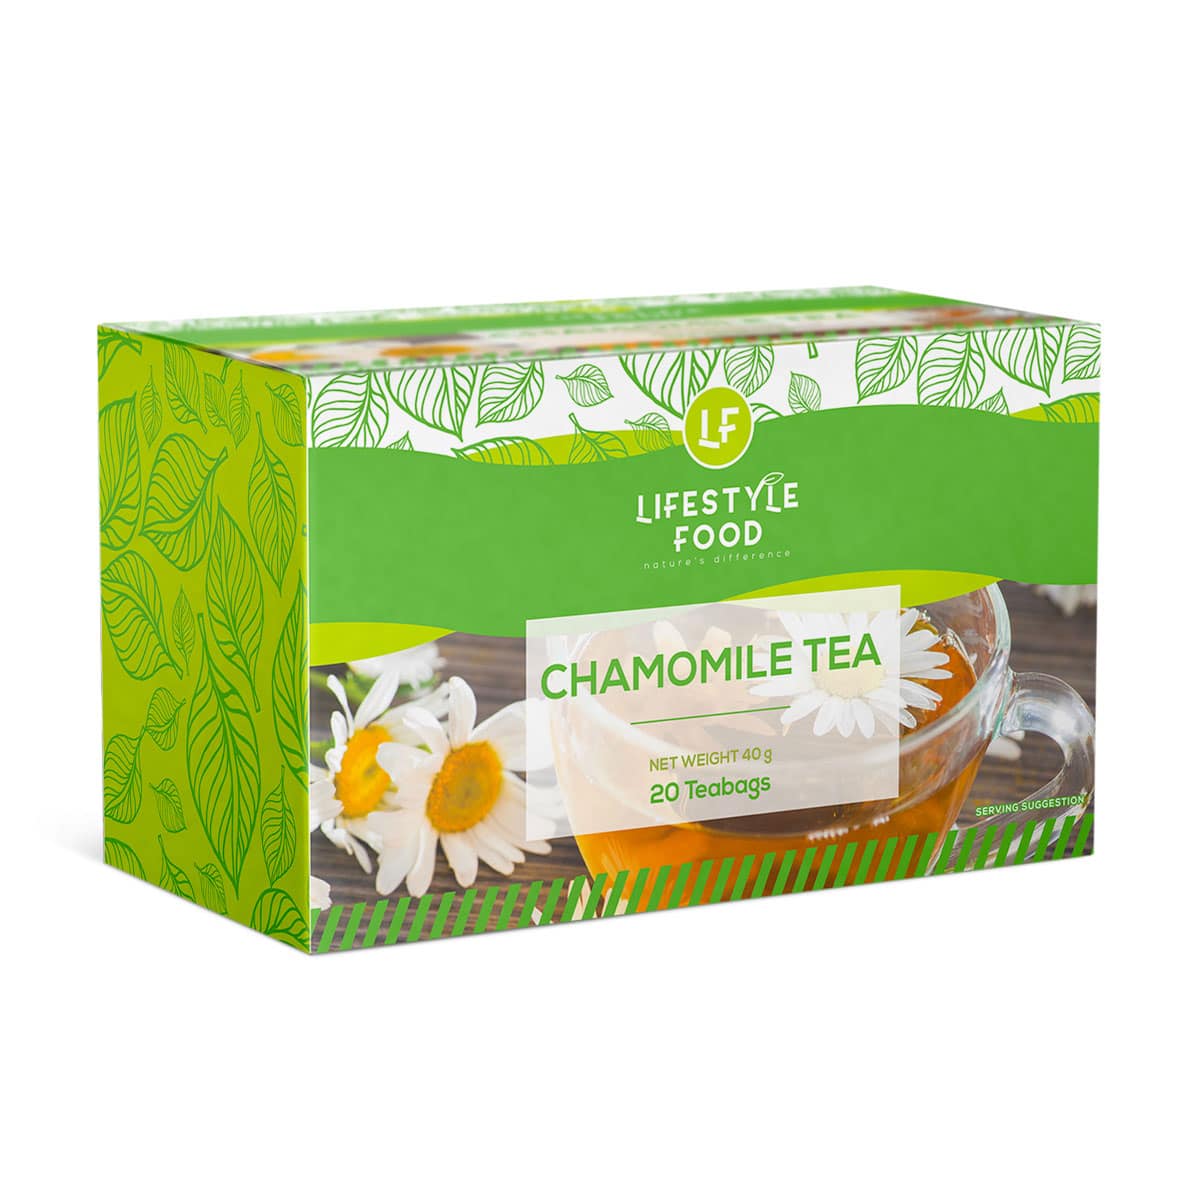 Lifestyle Food Chamomile Tea - 20 Teabags